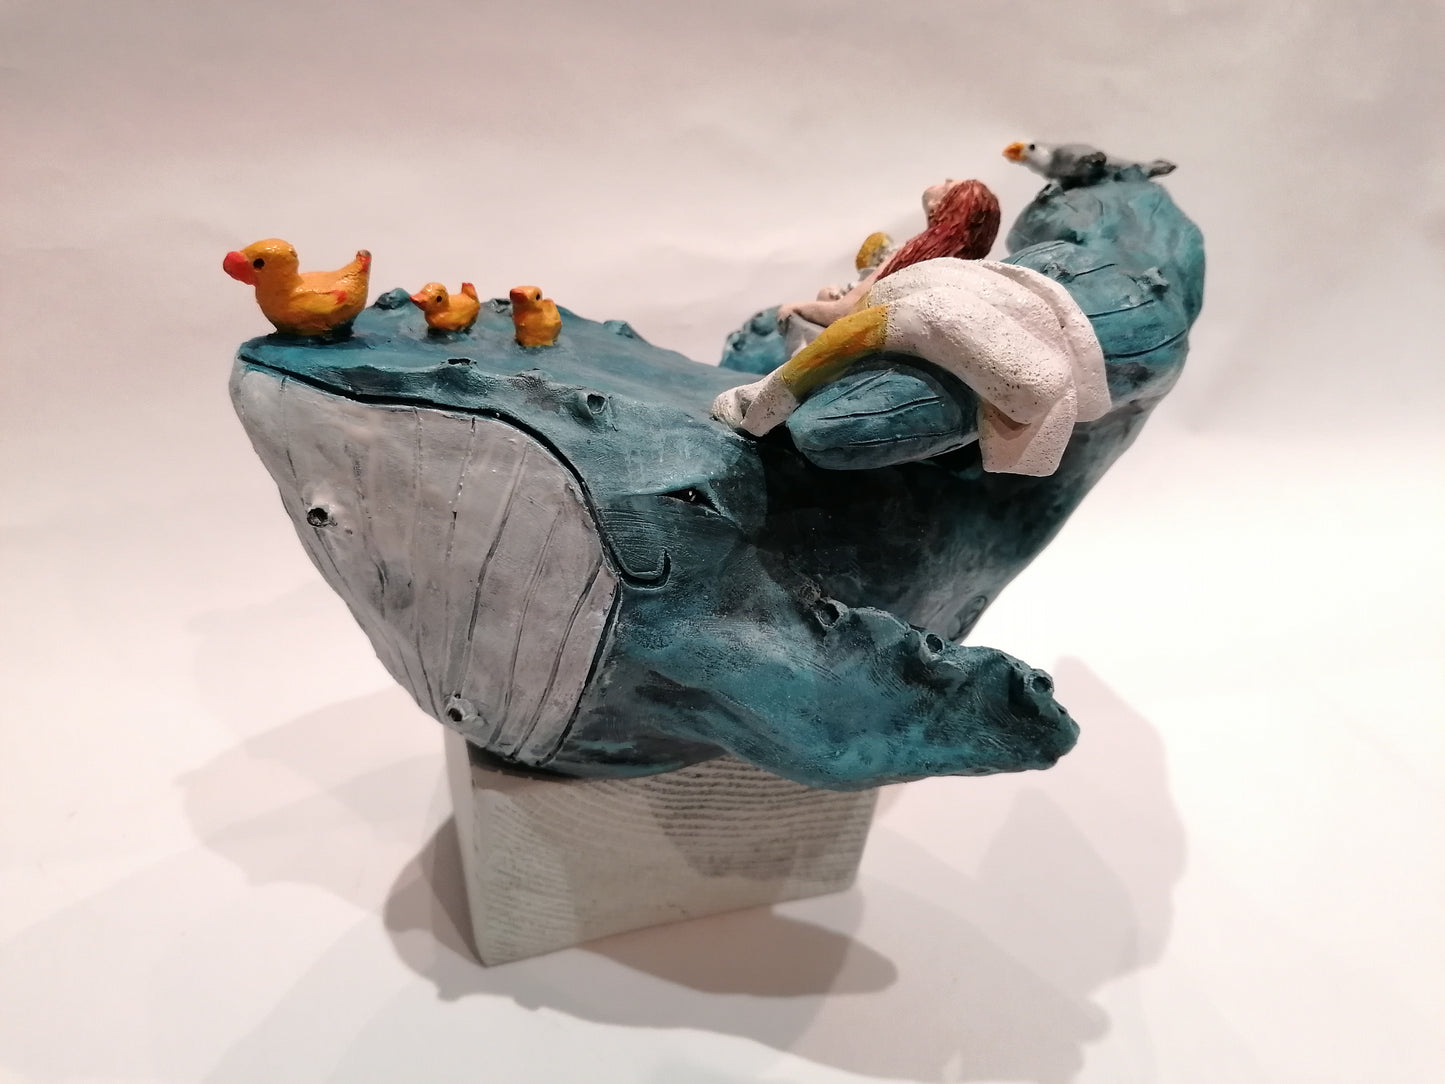 Baleine avec la petite baigneuse dans sa bassine et les canards By Sandrine De Zorzi